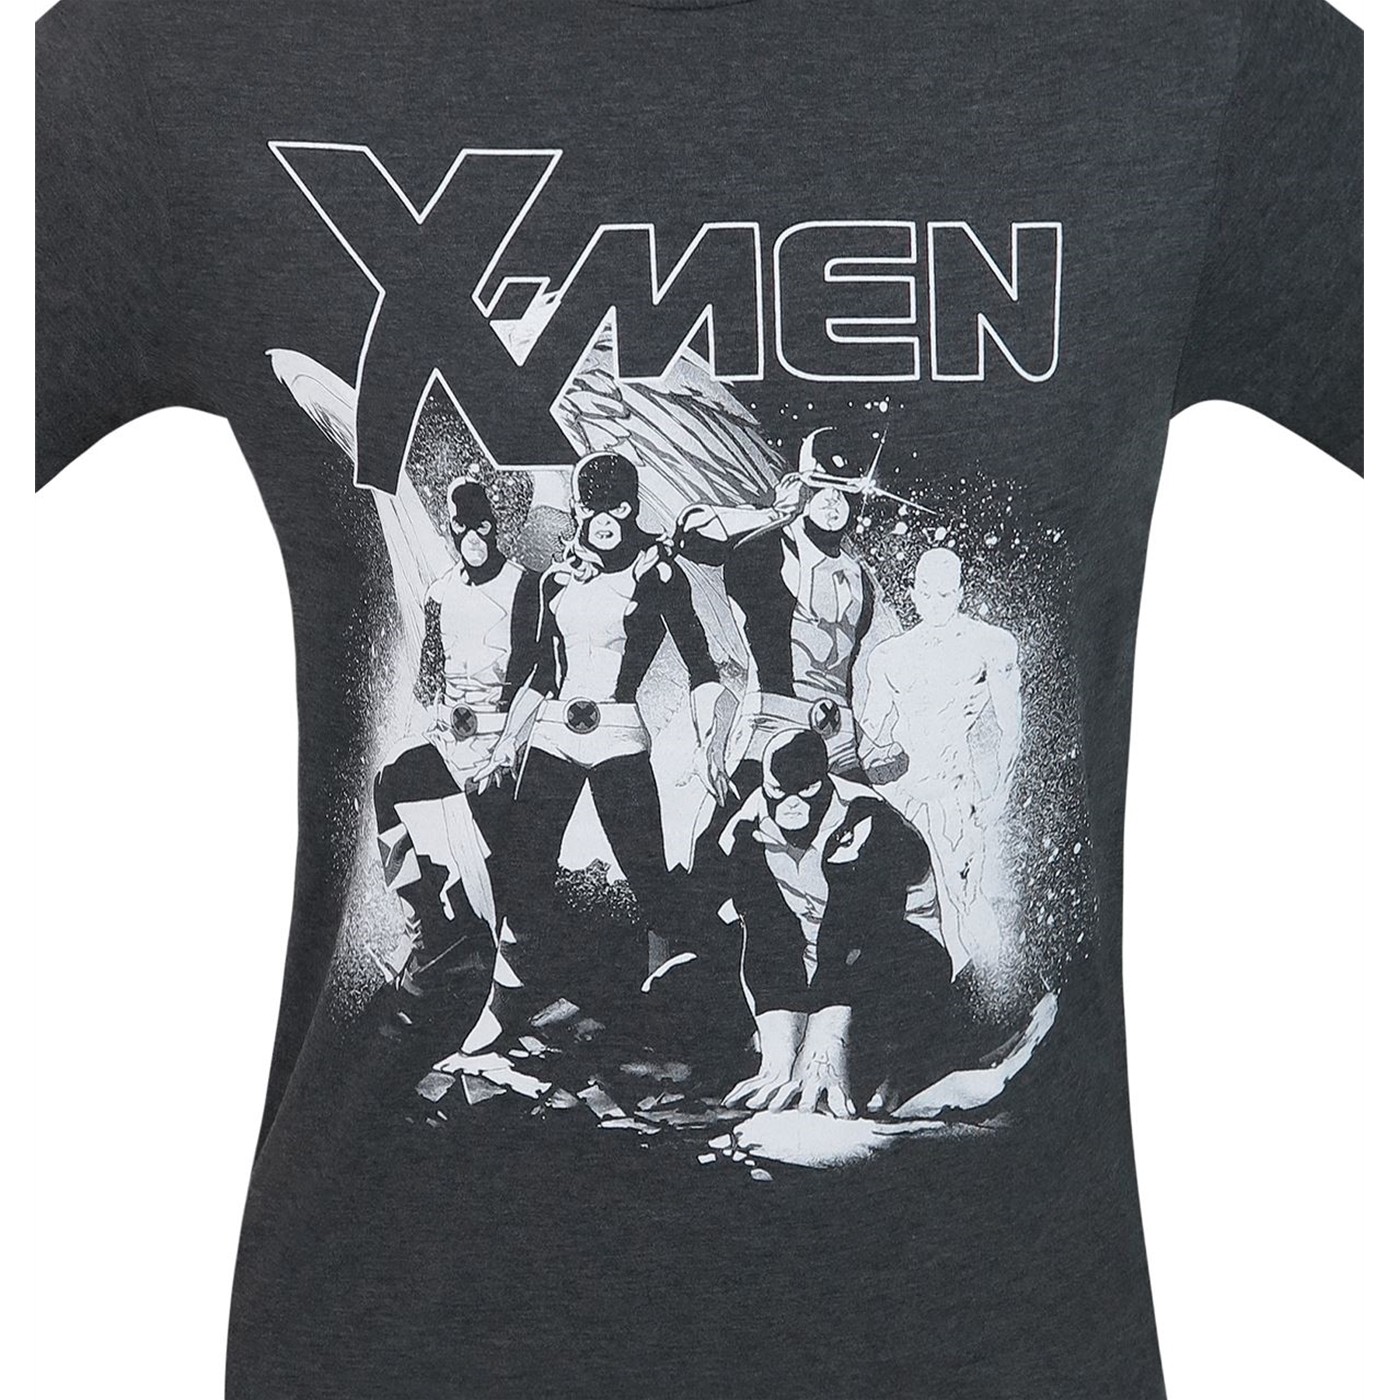 X-Men First Class Men's T-Shirt